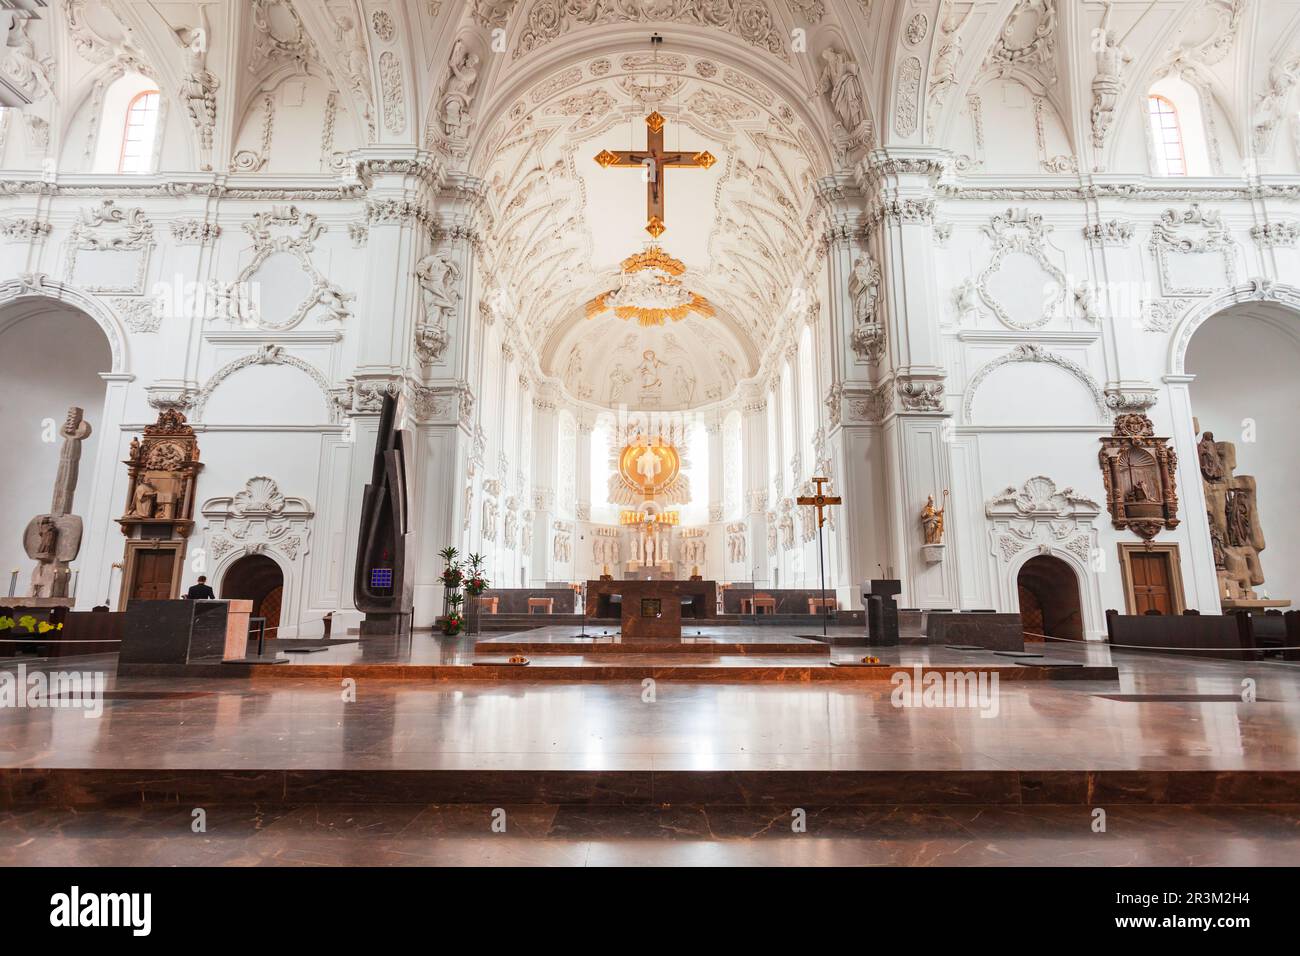 Würzburg, Deutschland - 11. Juli 2021: Würzburger Dom oder Innenraum des Würzburger Doms. Es ist eine römisch-katholische Kathedrale in der Würzburger Altstadt in Bayern, Ge Stockfoto